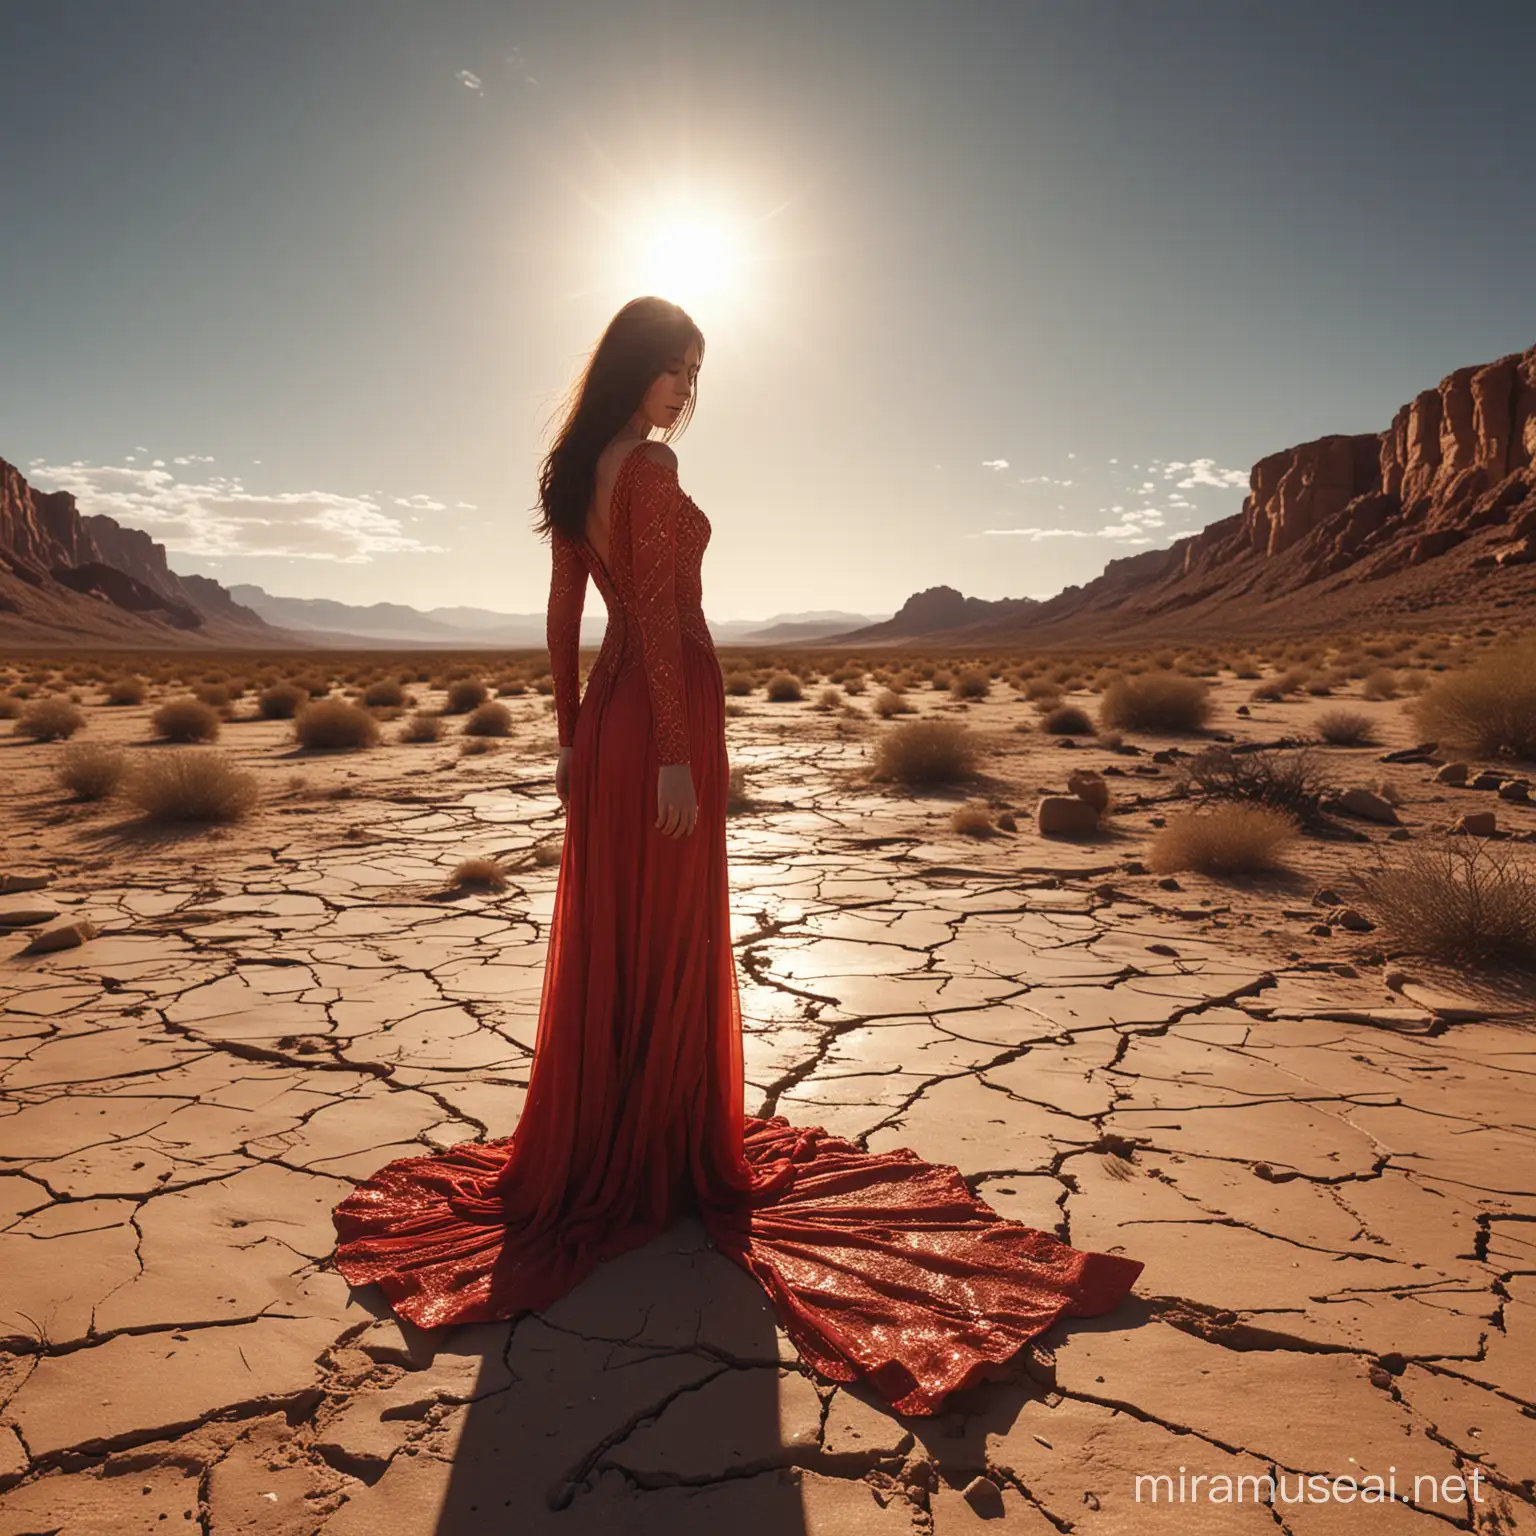 Fantasy Art Woman Reflecting on Fallen Sky in Desert